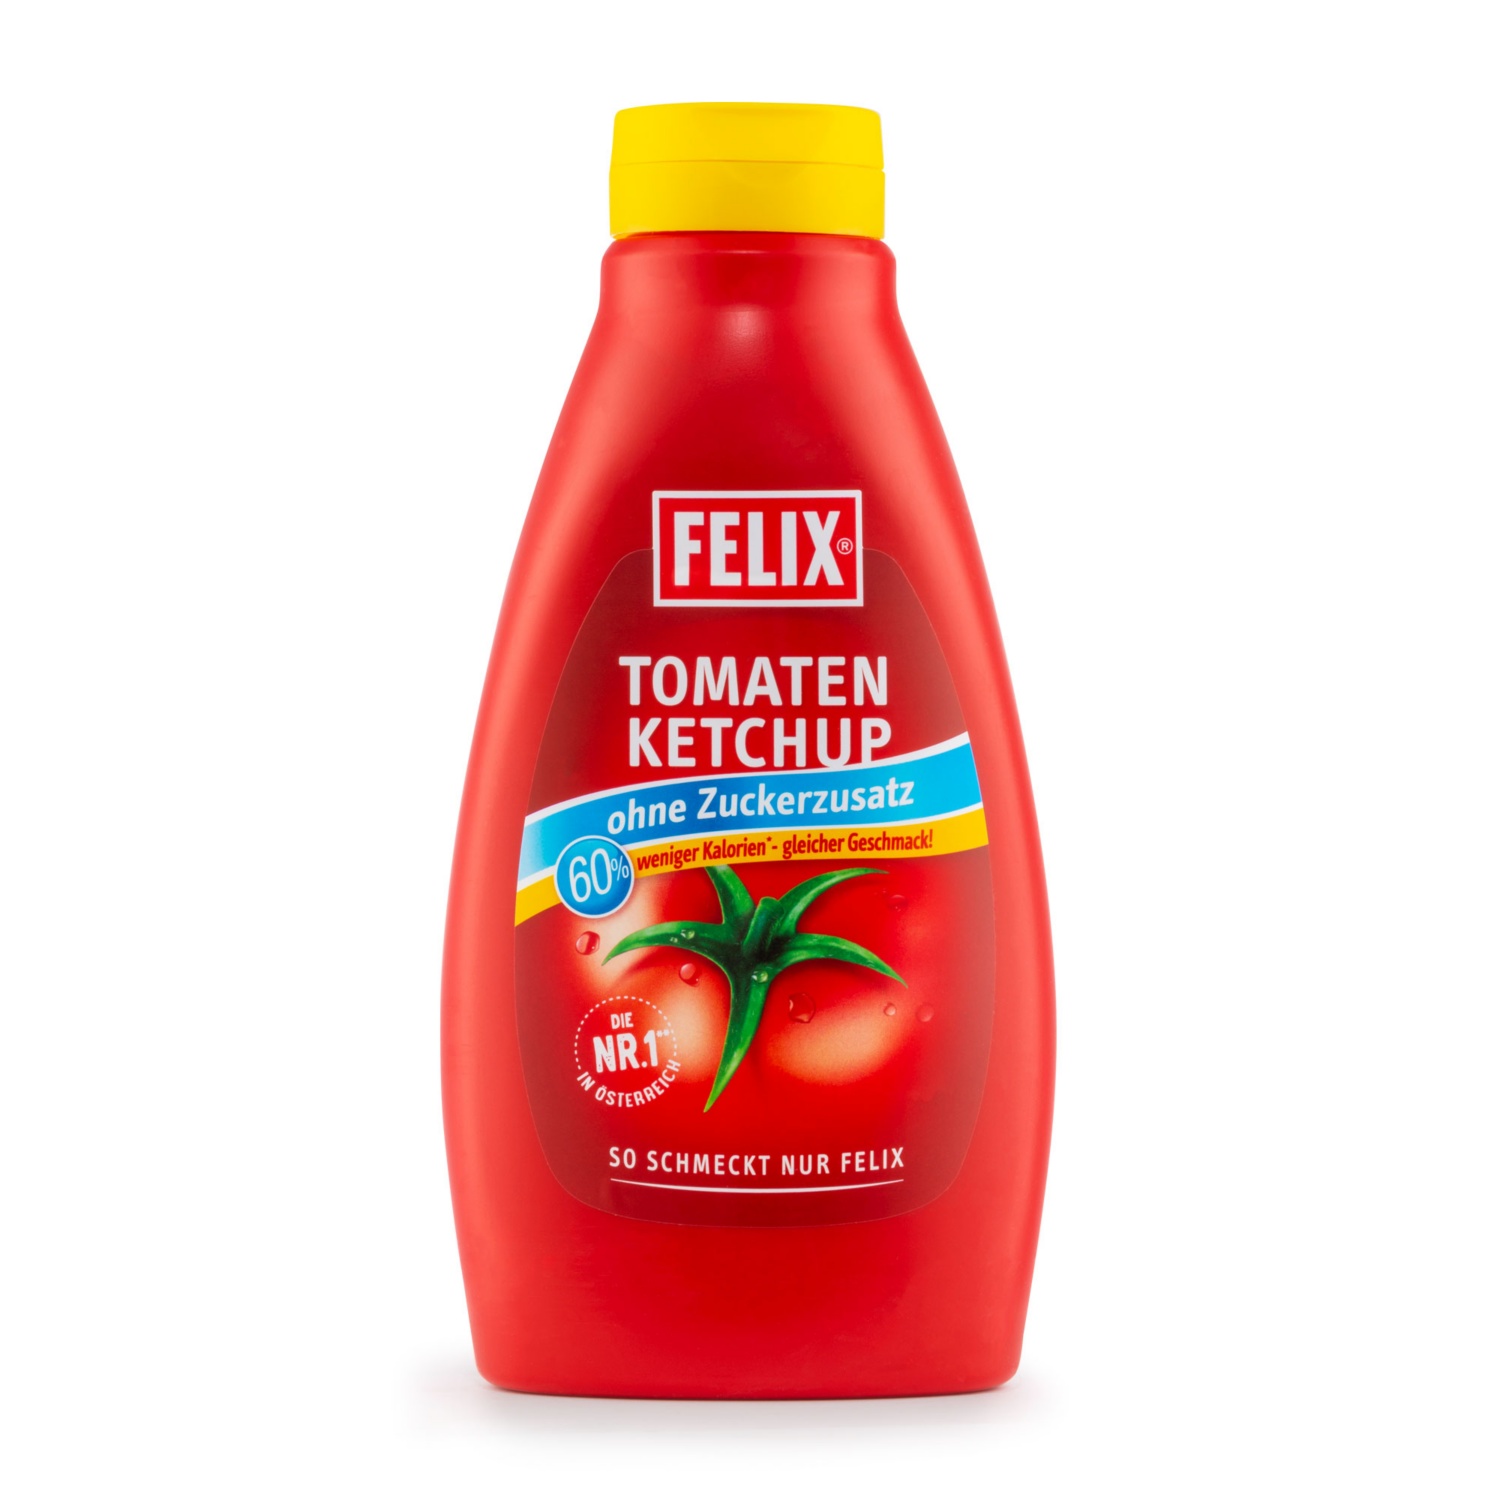 FELIX Ketchup, Zuckerfrei